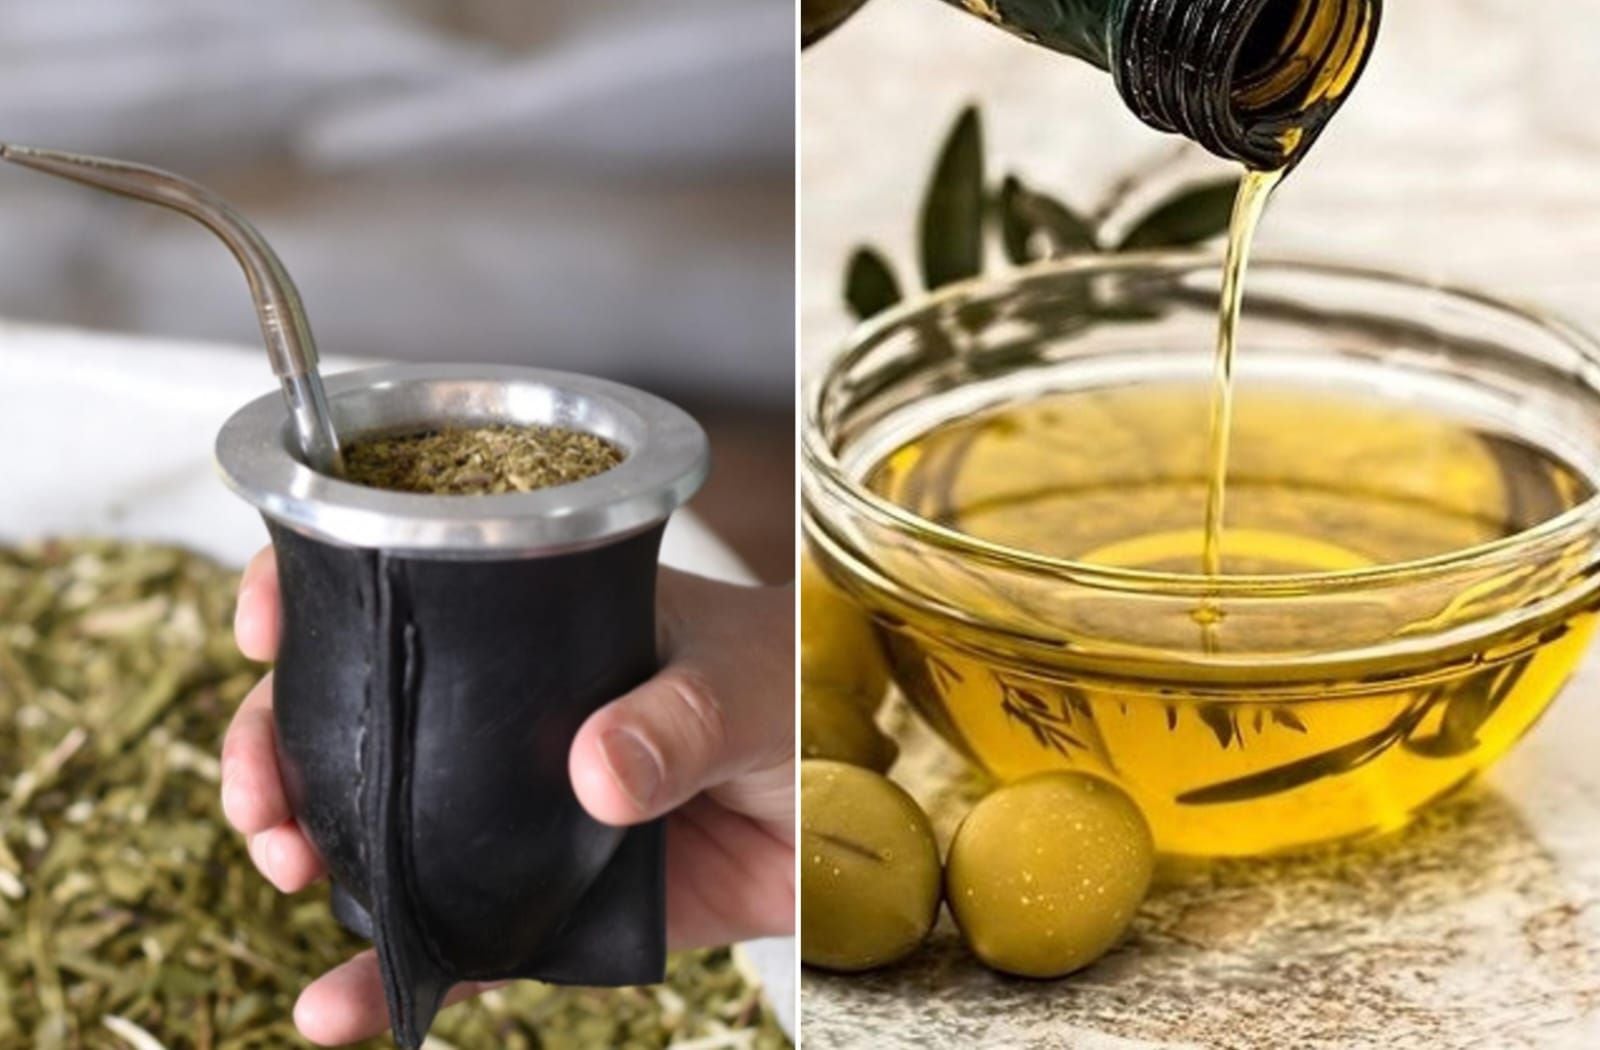 La ANMAT prohibió una marca de yerba mate y un aceite de oliva por irregularidades en su fabricación